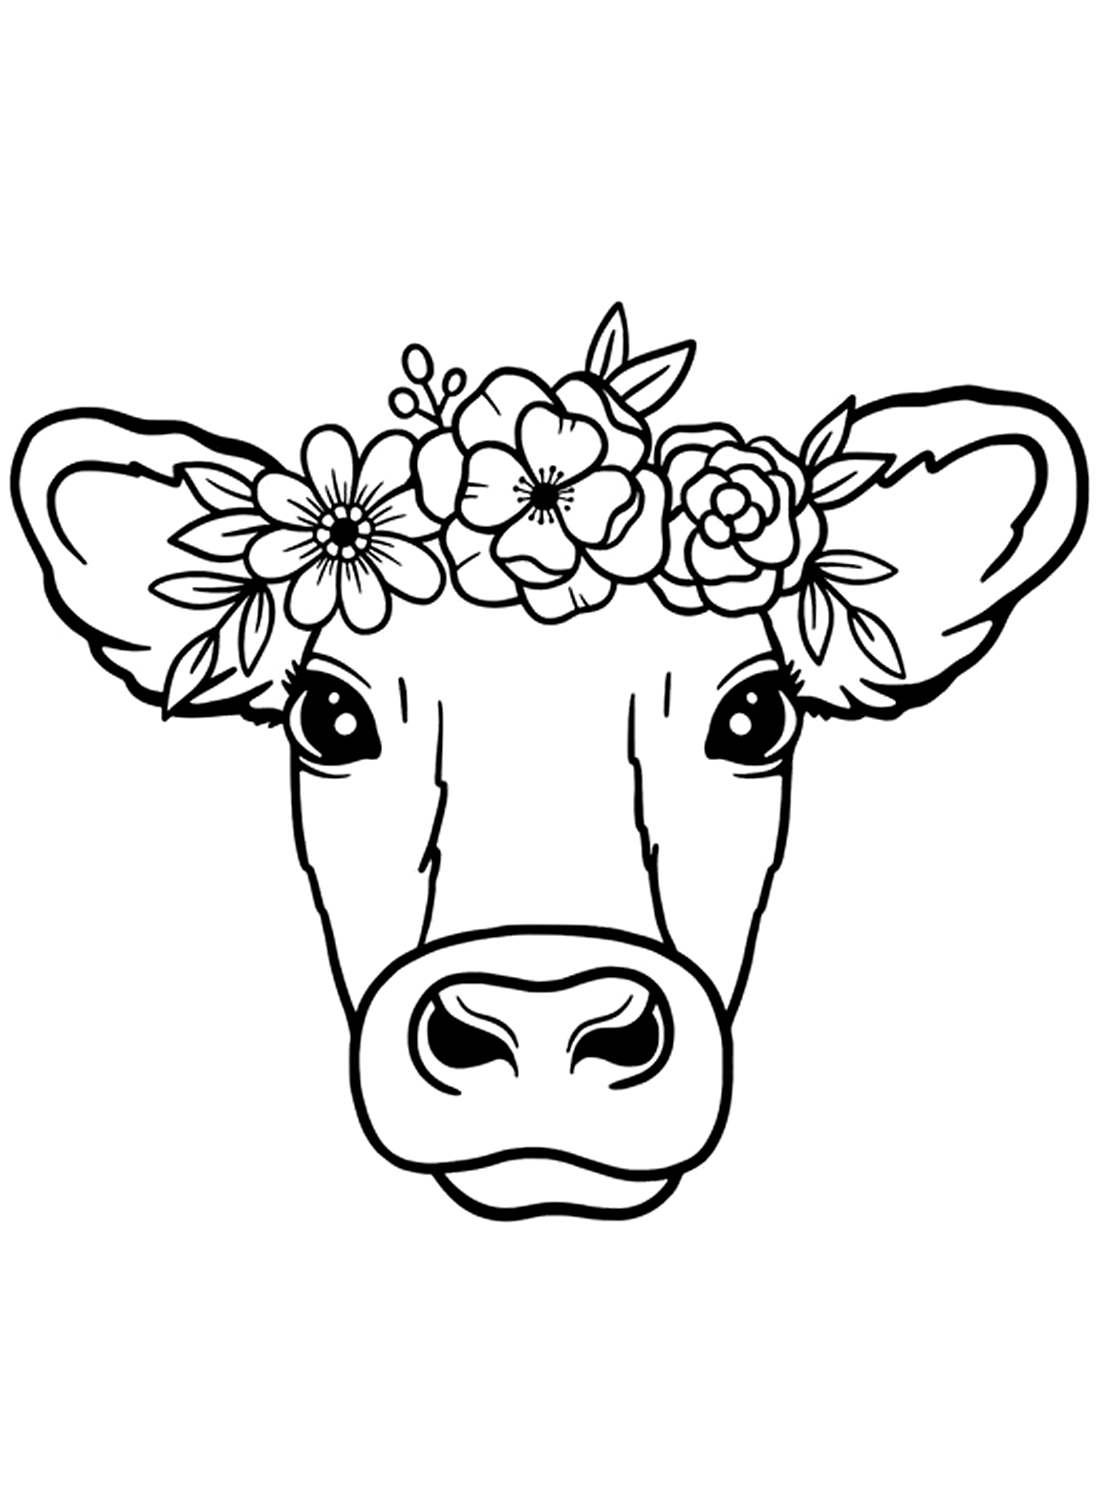 Голова коровы. Изображение коровы